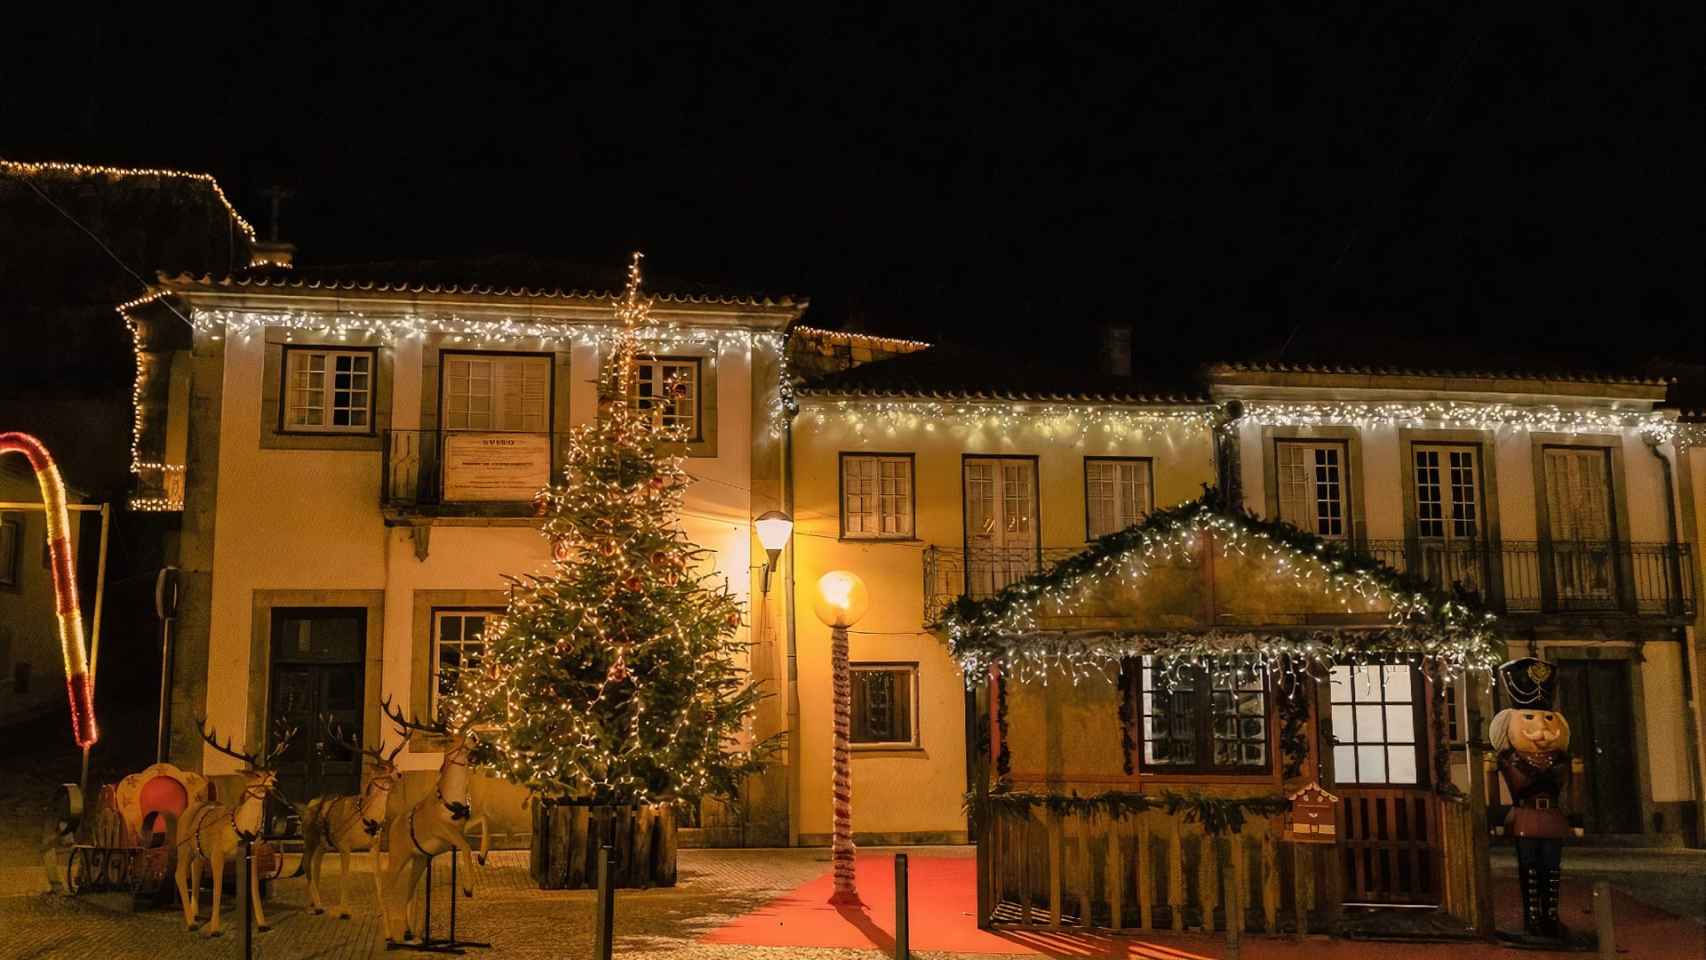 Vilanova de Cerveira decorada por Navidad.